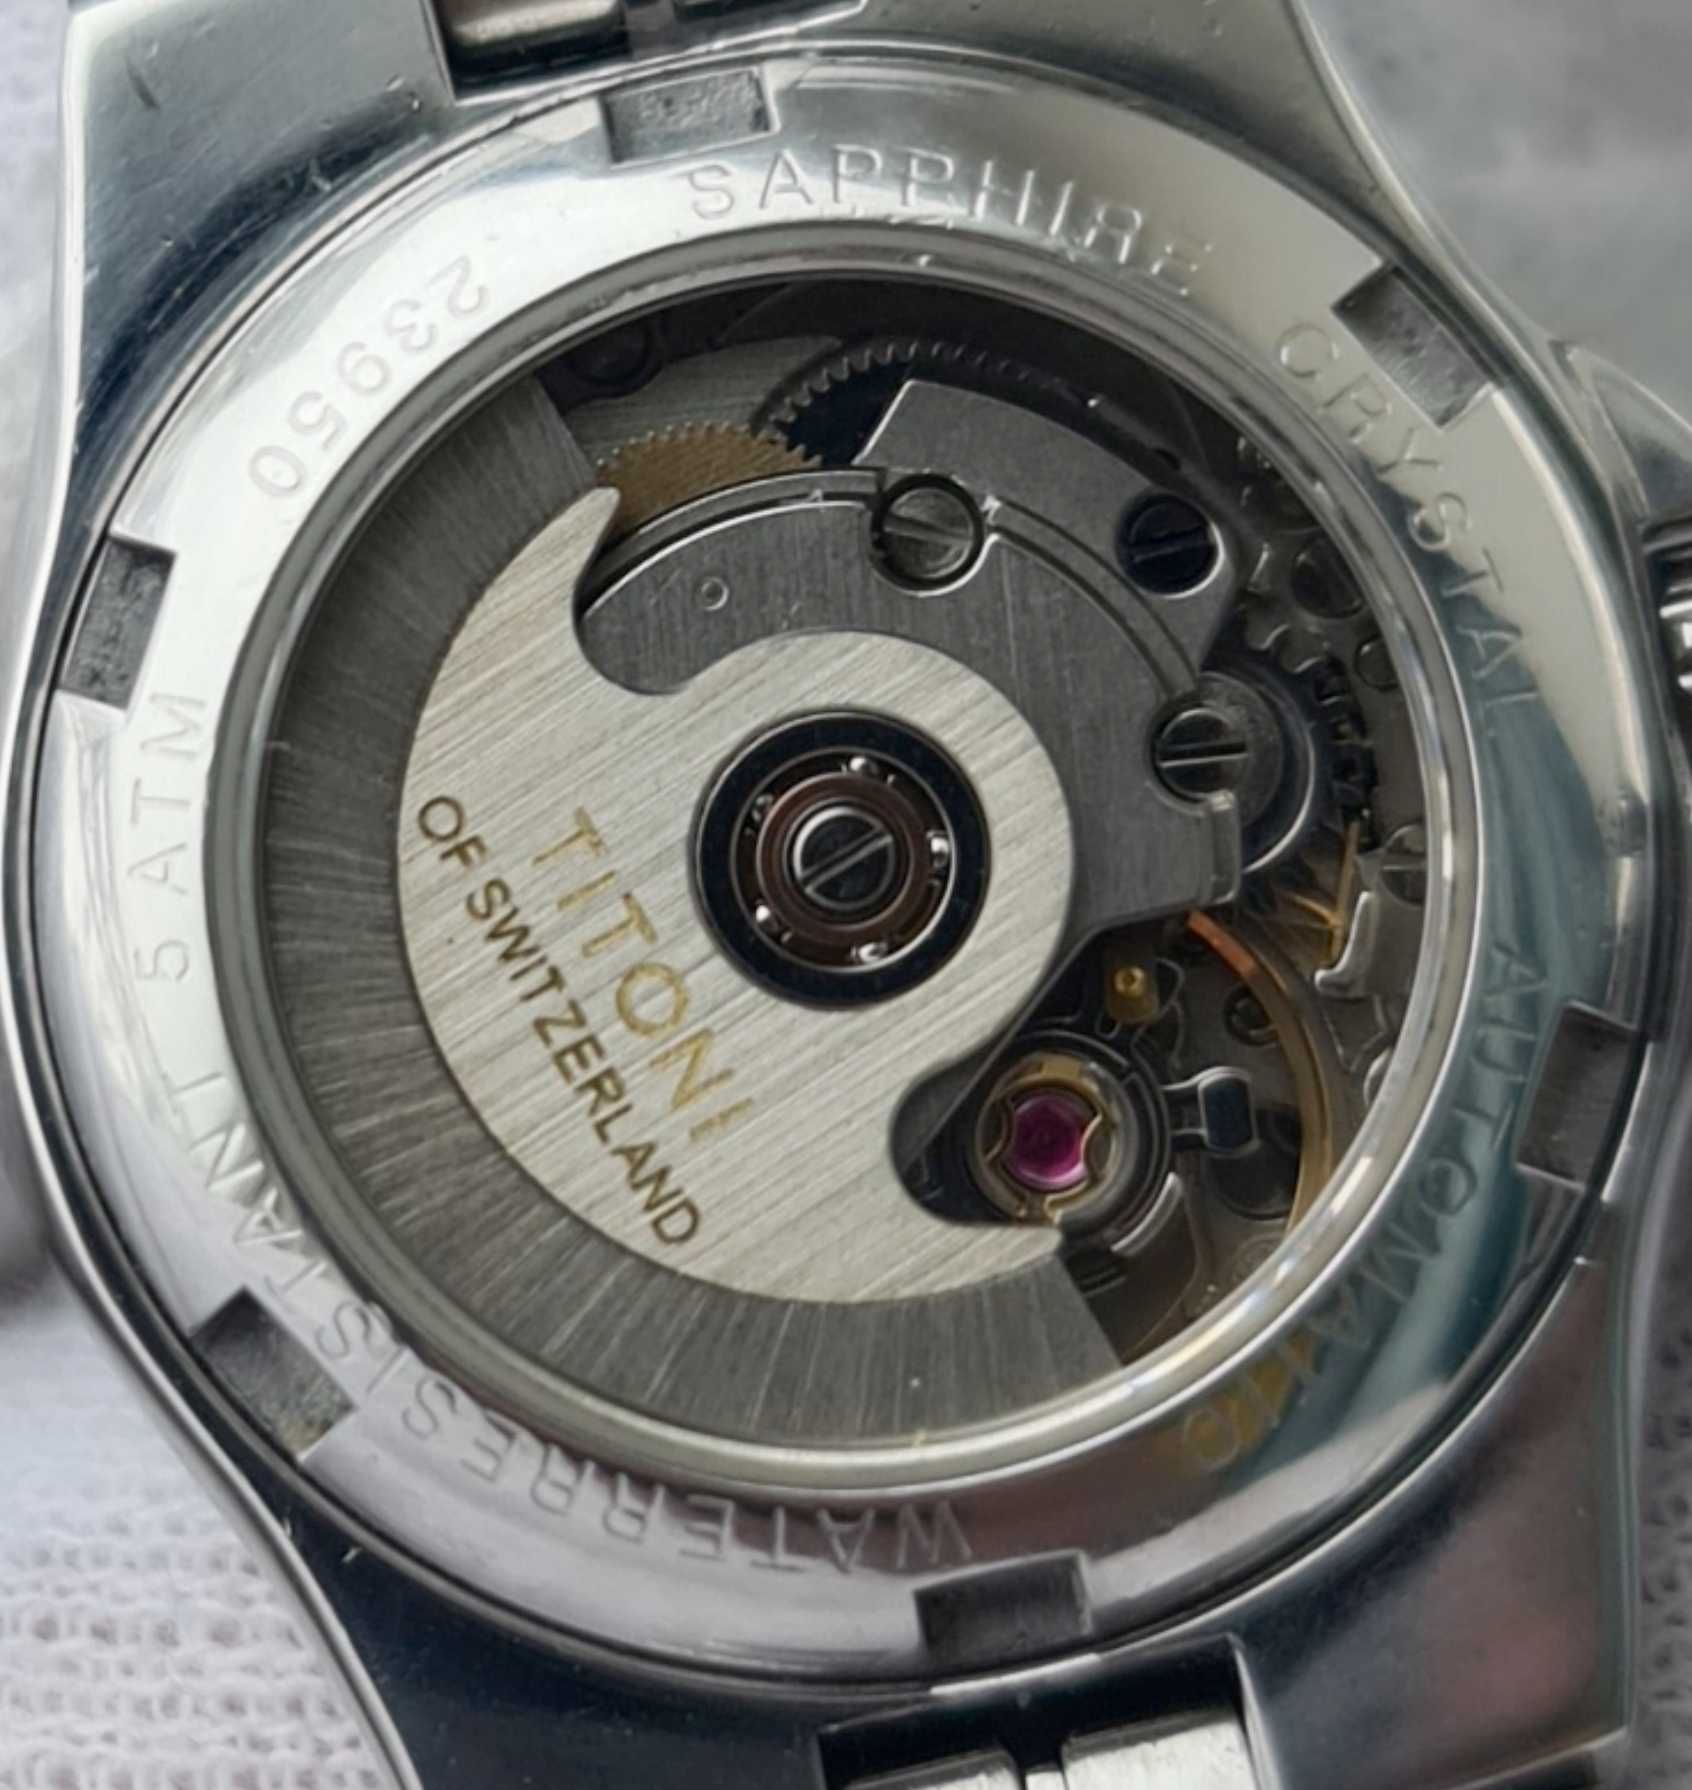 Жіночий годинник часы Titoni 23950 Automatic Sapphire Swiss made